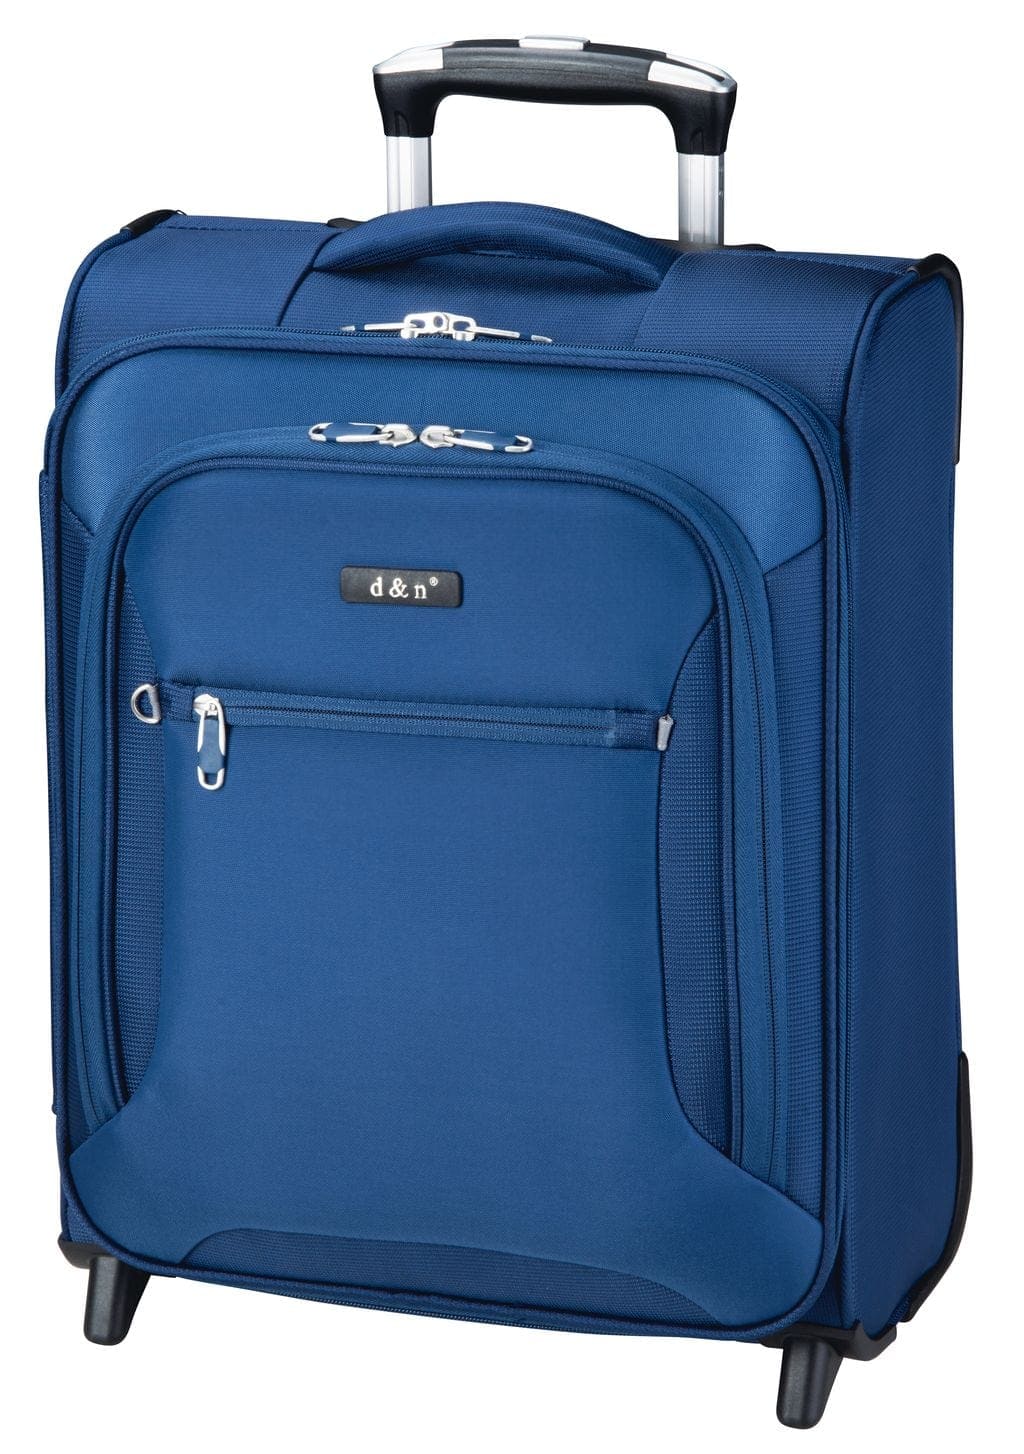 Cestovní kufr d&n S 6454-06 35 L modrá